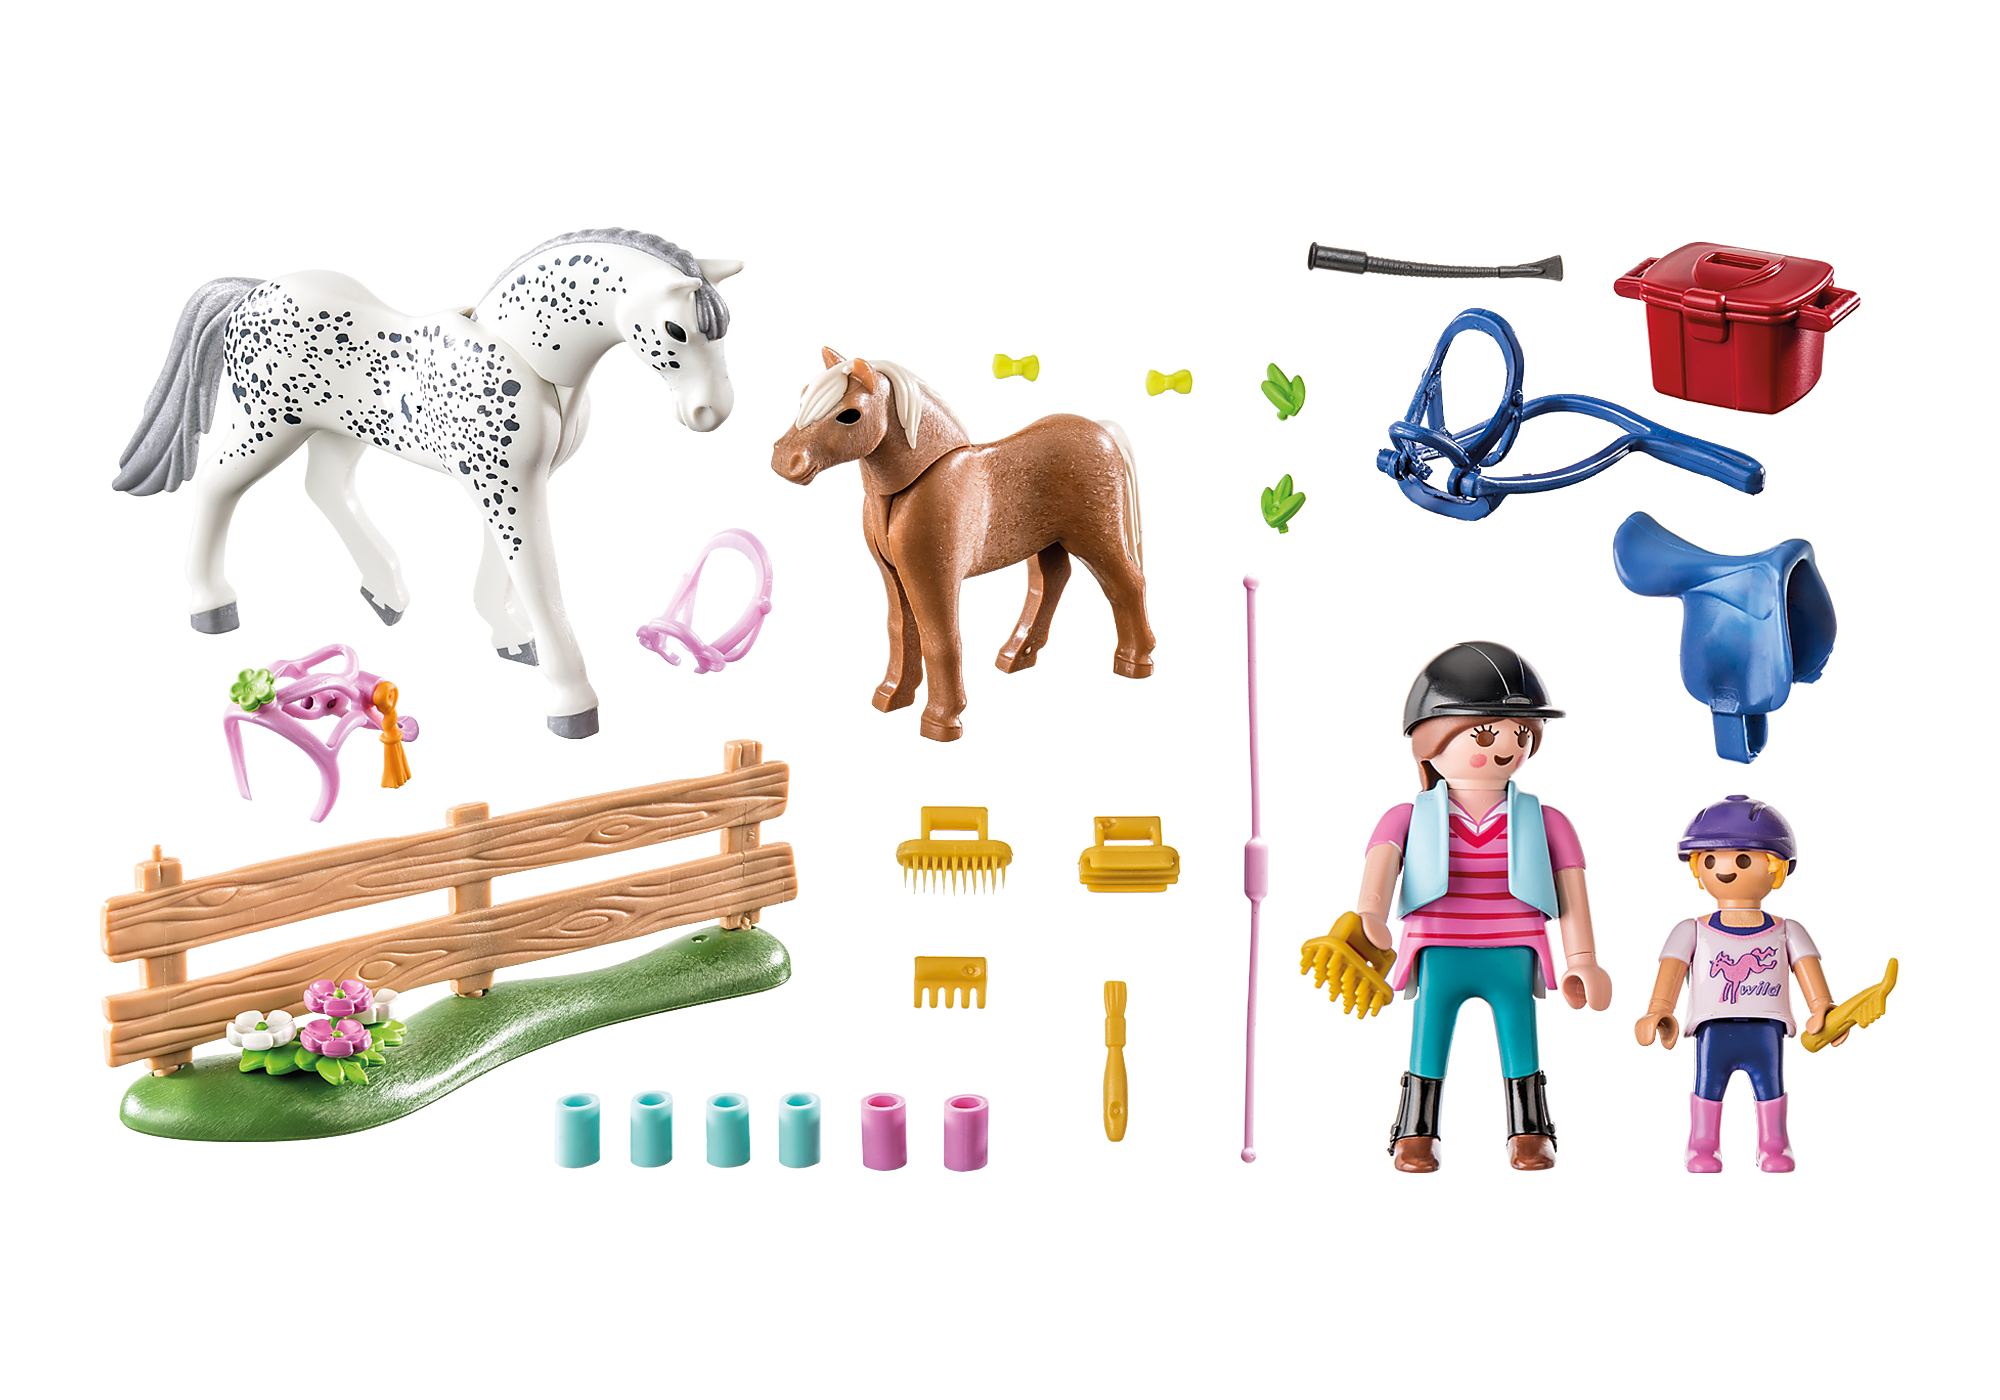 Pays Playmobil : Vétérinaire pour chevaux